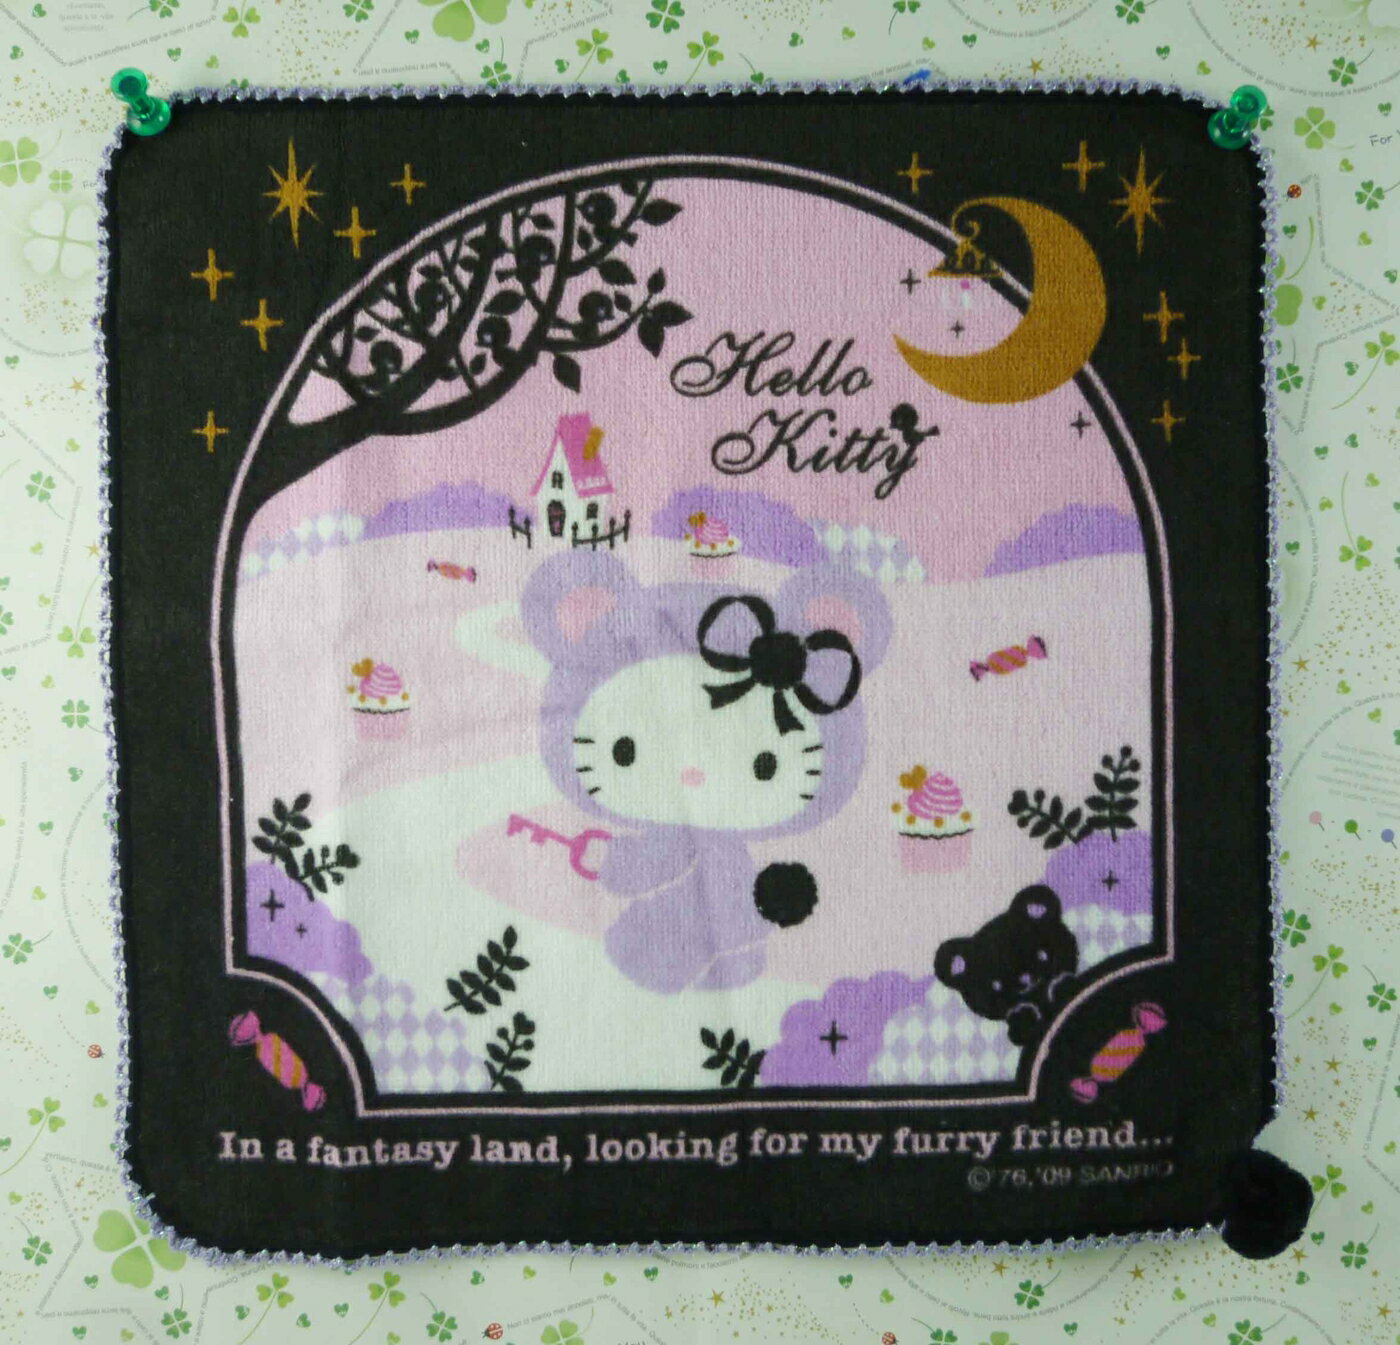 【震撼精品百貨】Hello Kitty 凱蒂貓 方巾-限量款-不思議 震撼日式精品百貨